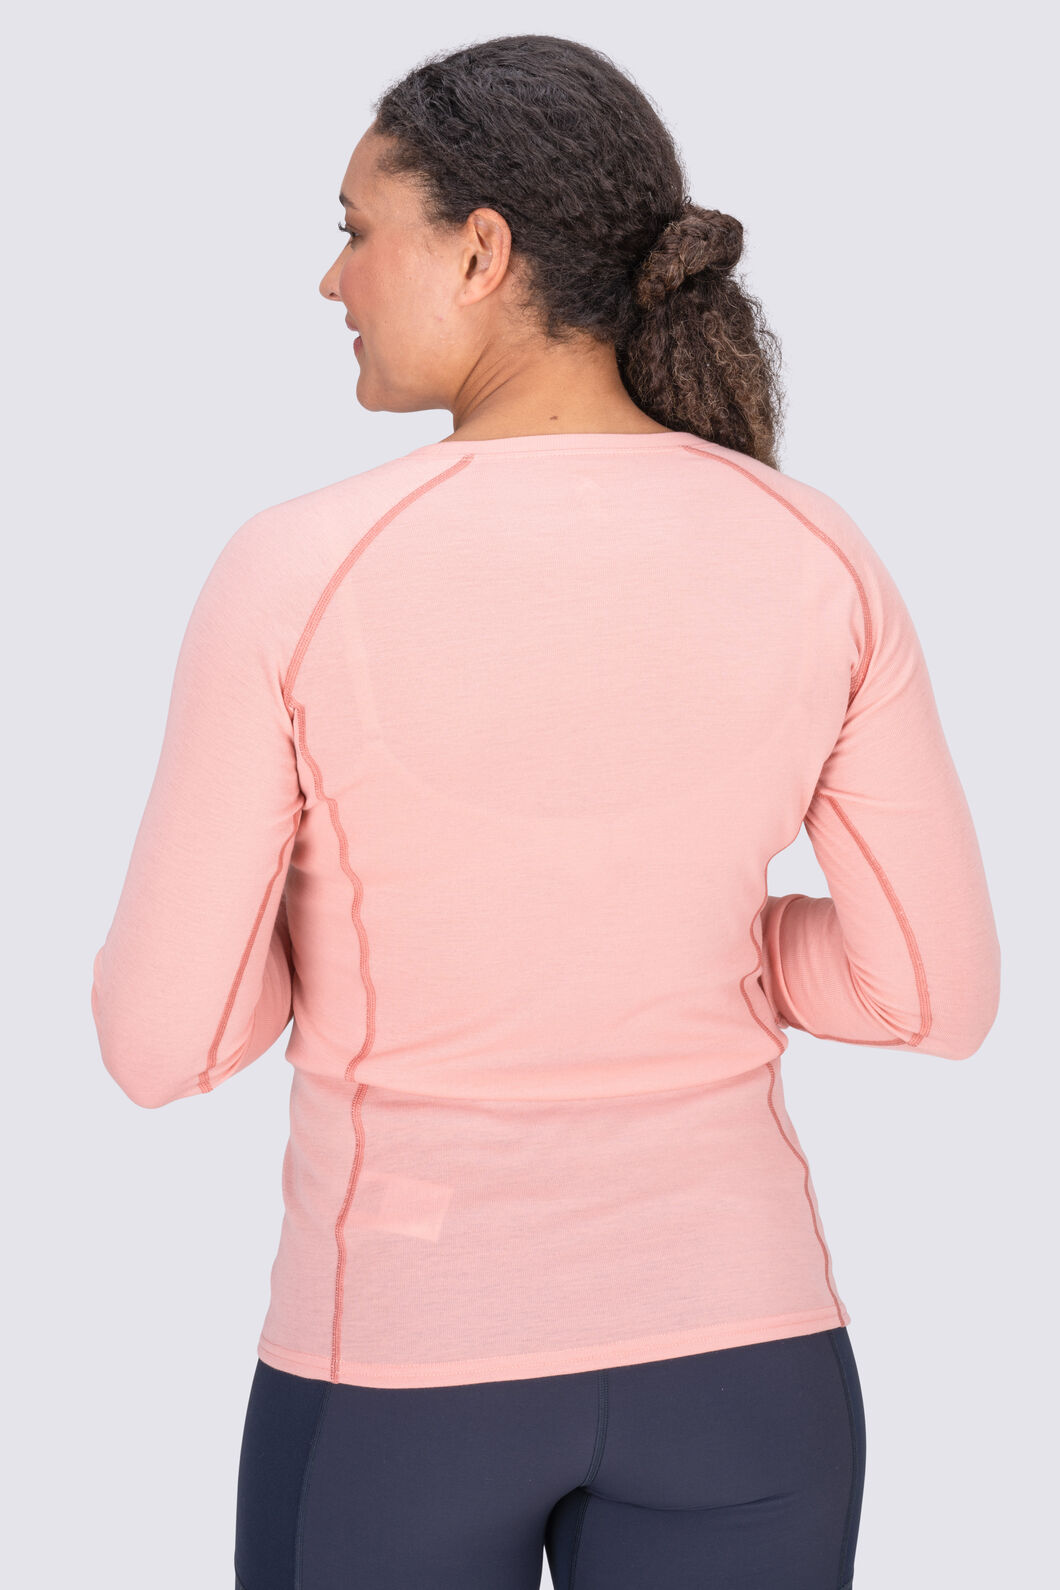 Romwe Women's Long Sleeve Zipper … curated on LTK